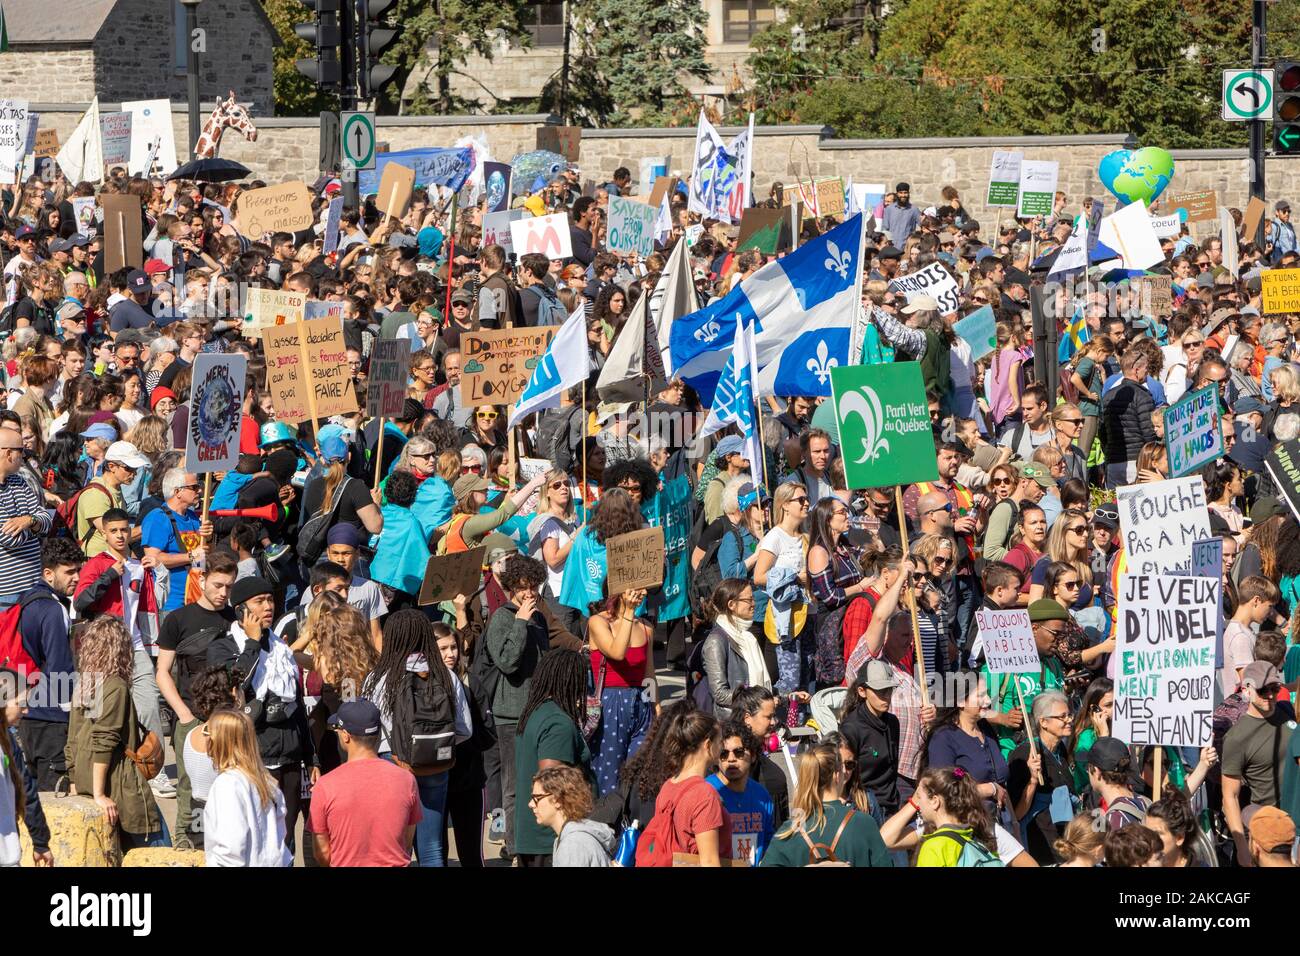 Canada, Province de Québec, Montréal, la marche pour le climat, la procession, foule agitant signe avec slogan, drapeau du Québec Banque D'Images